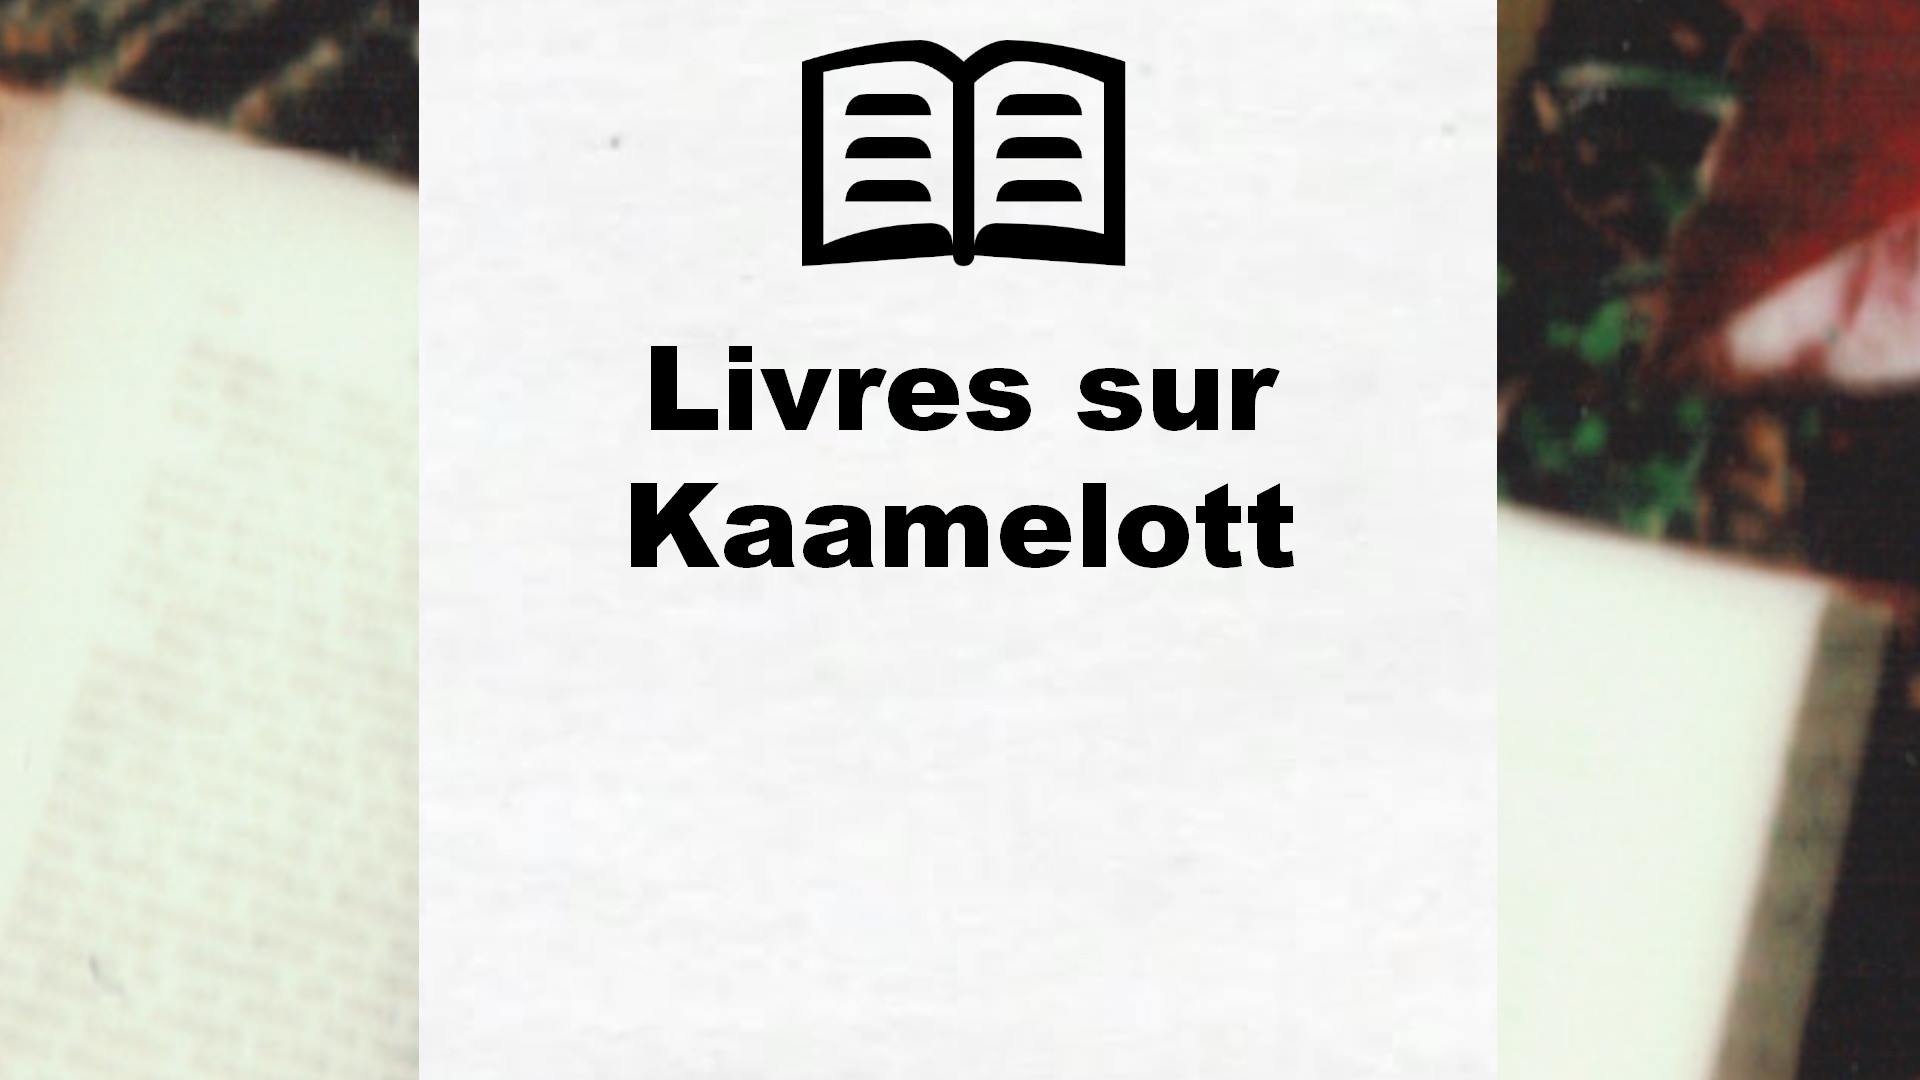 Livres sur Kaamelott